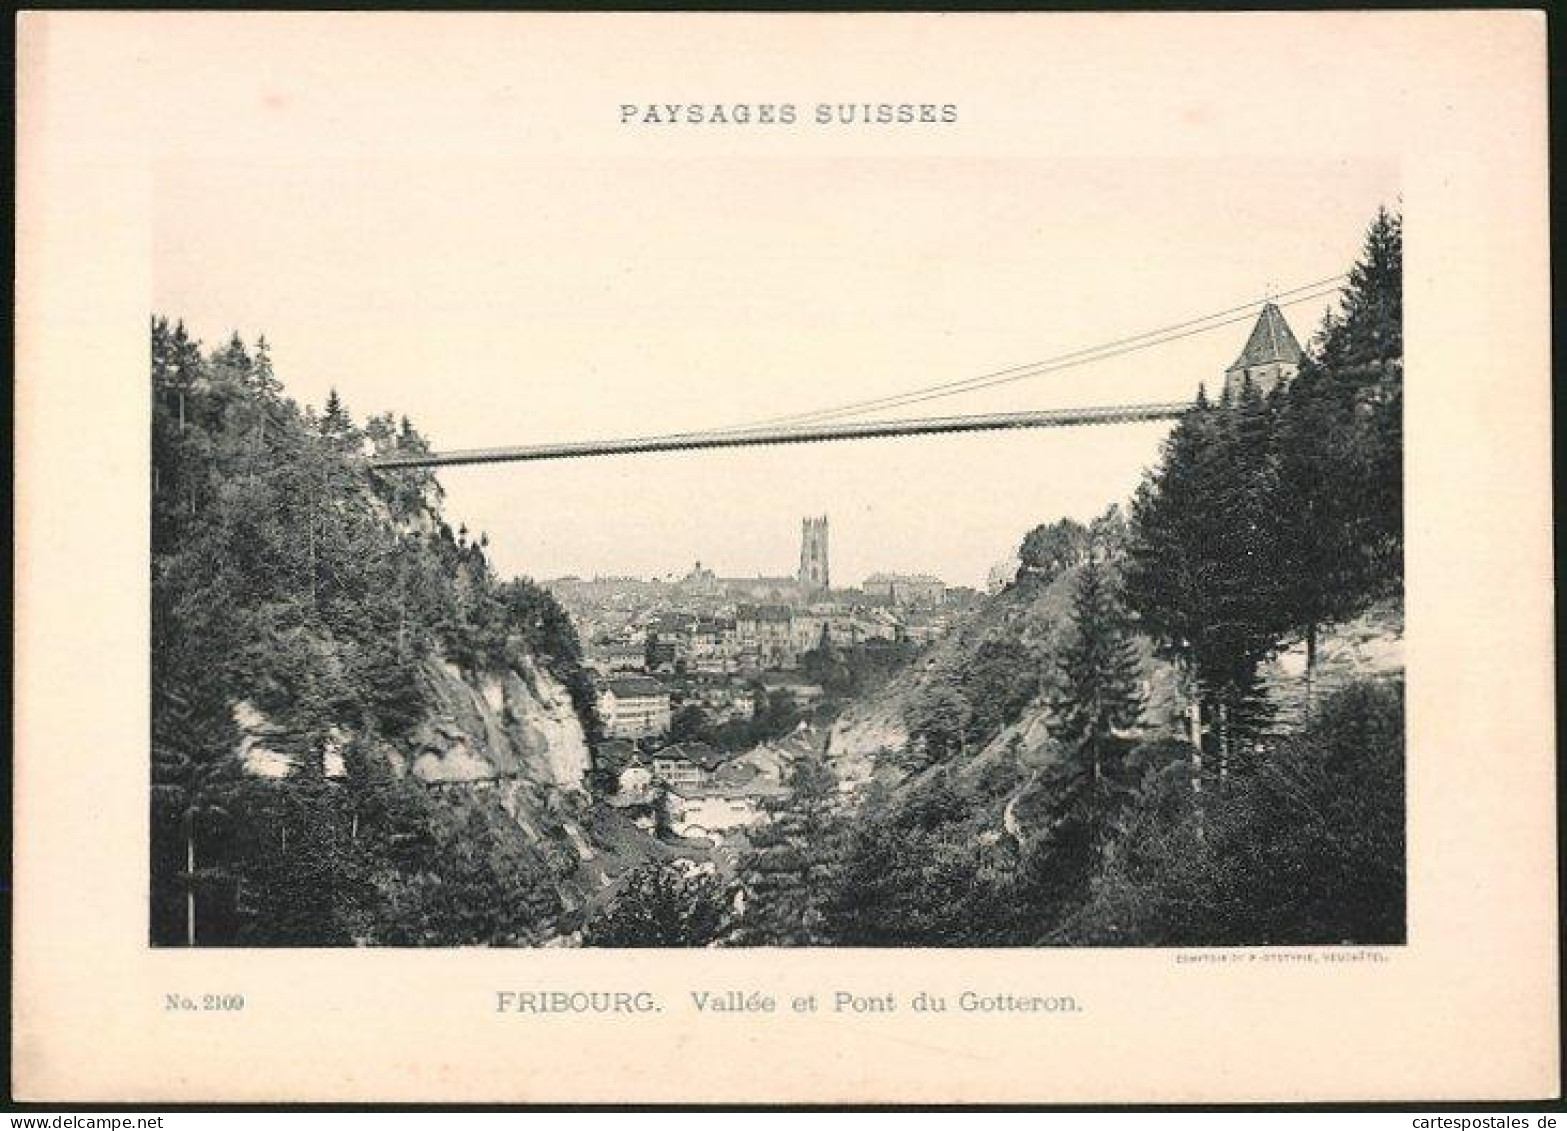 Lichtdruck Phototypie Neuchatel Nr. 2109, Ansicht Fribourg, Vallee Et Pont Du Gotteron  - Lieux